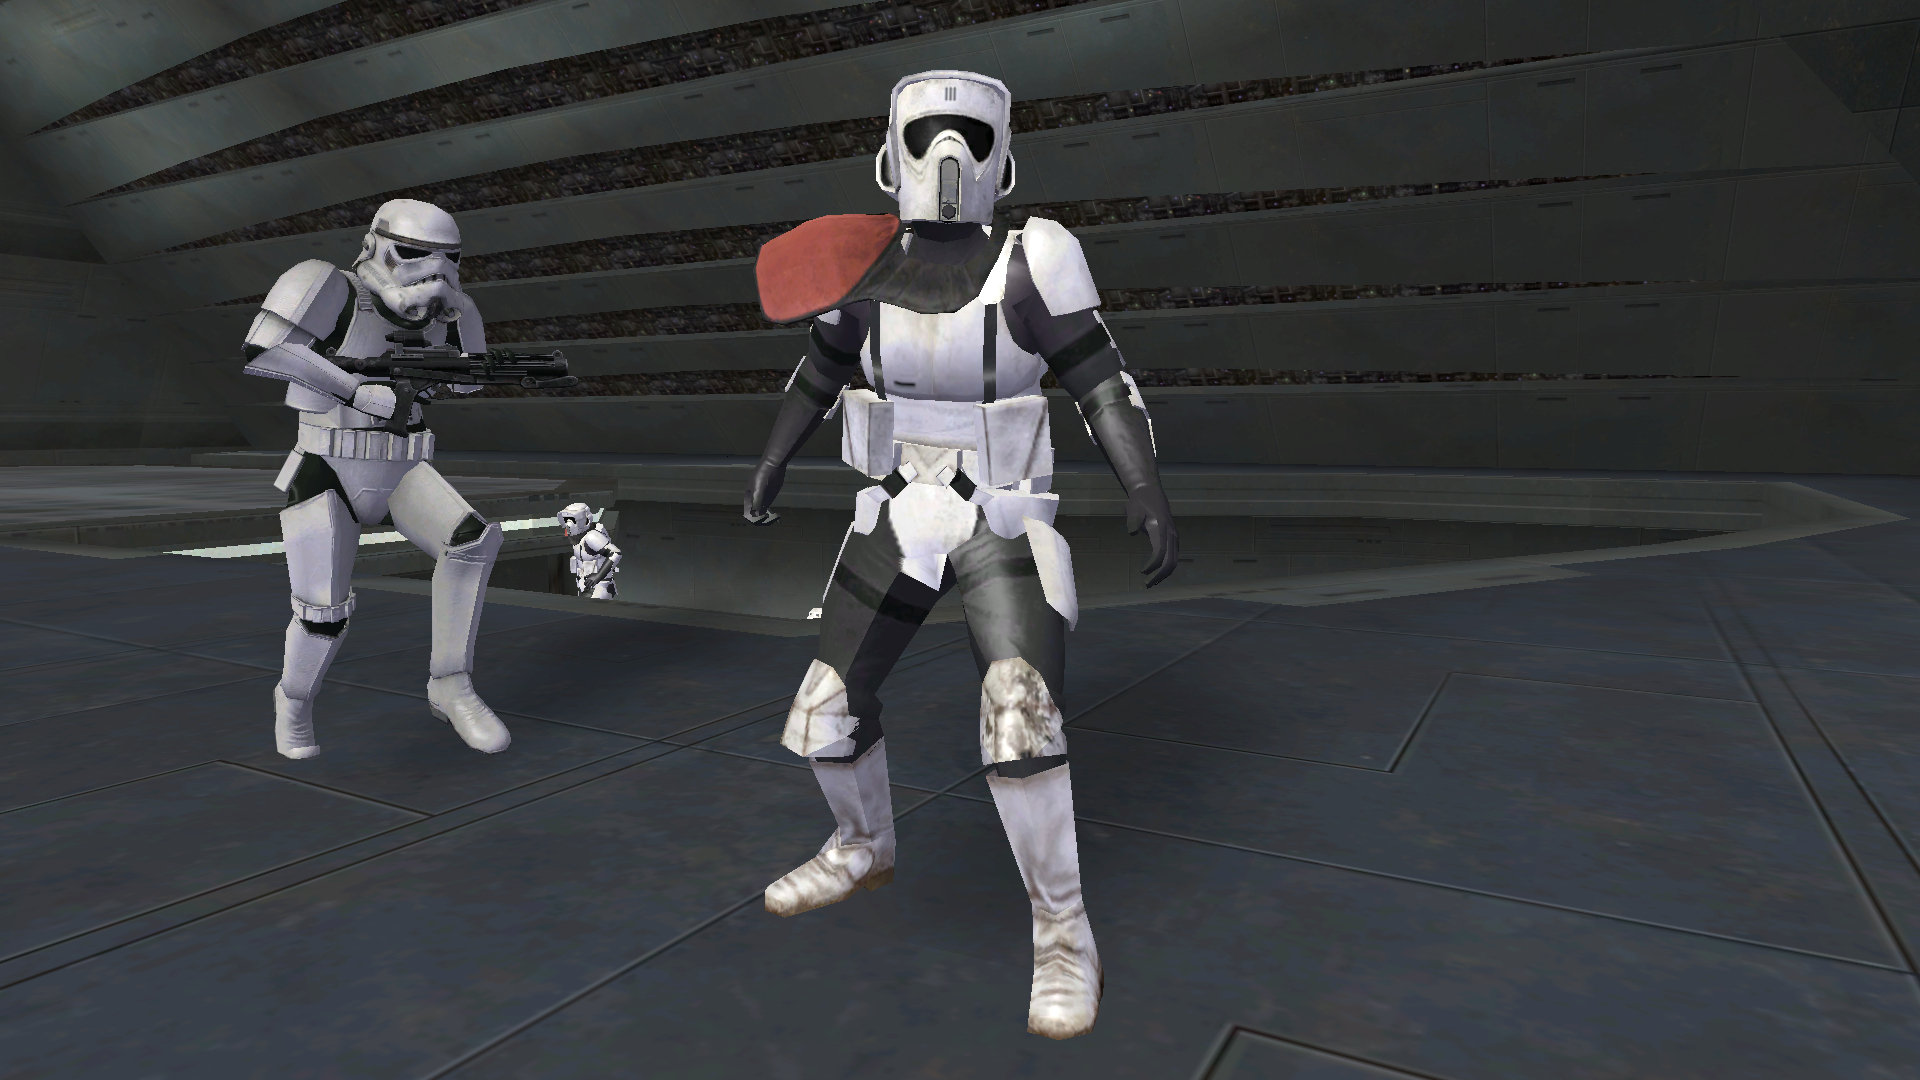 Scout Trooper Commander image Wars Battlefront 2 Legends mod for Star Wars Battlefront II